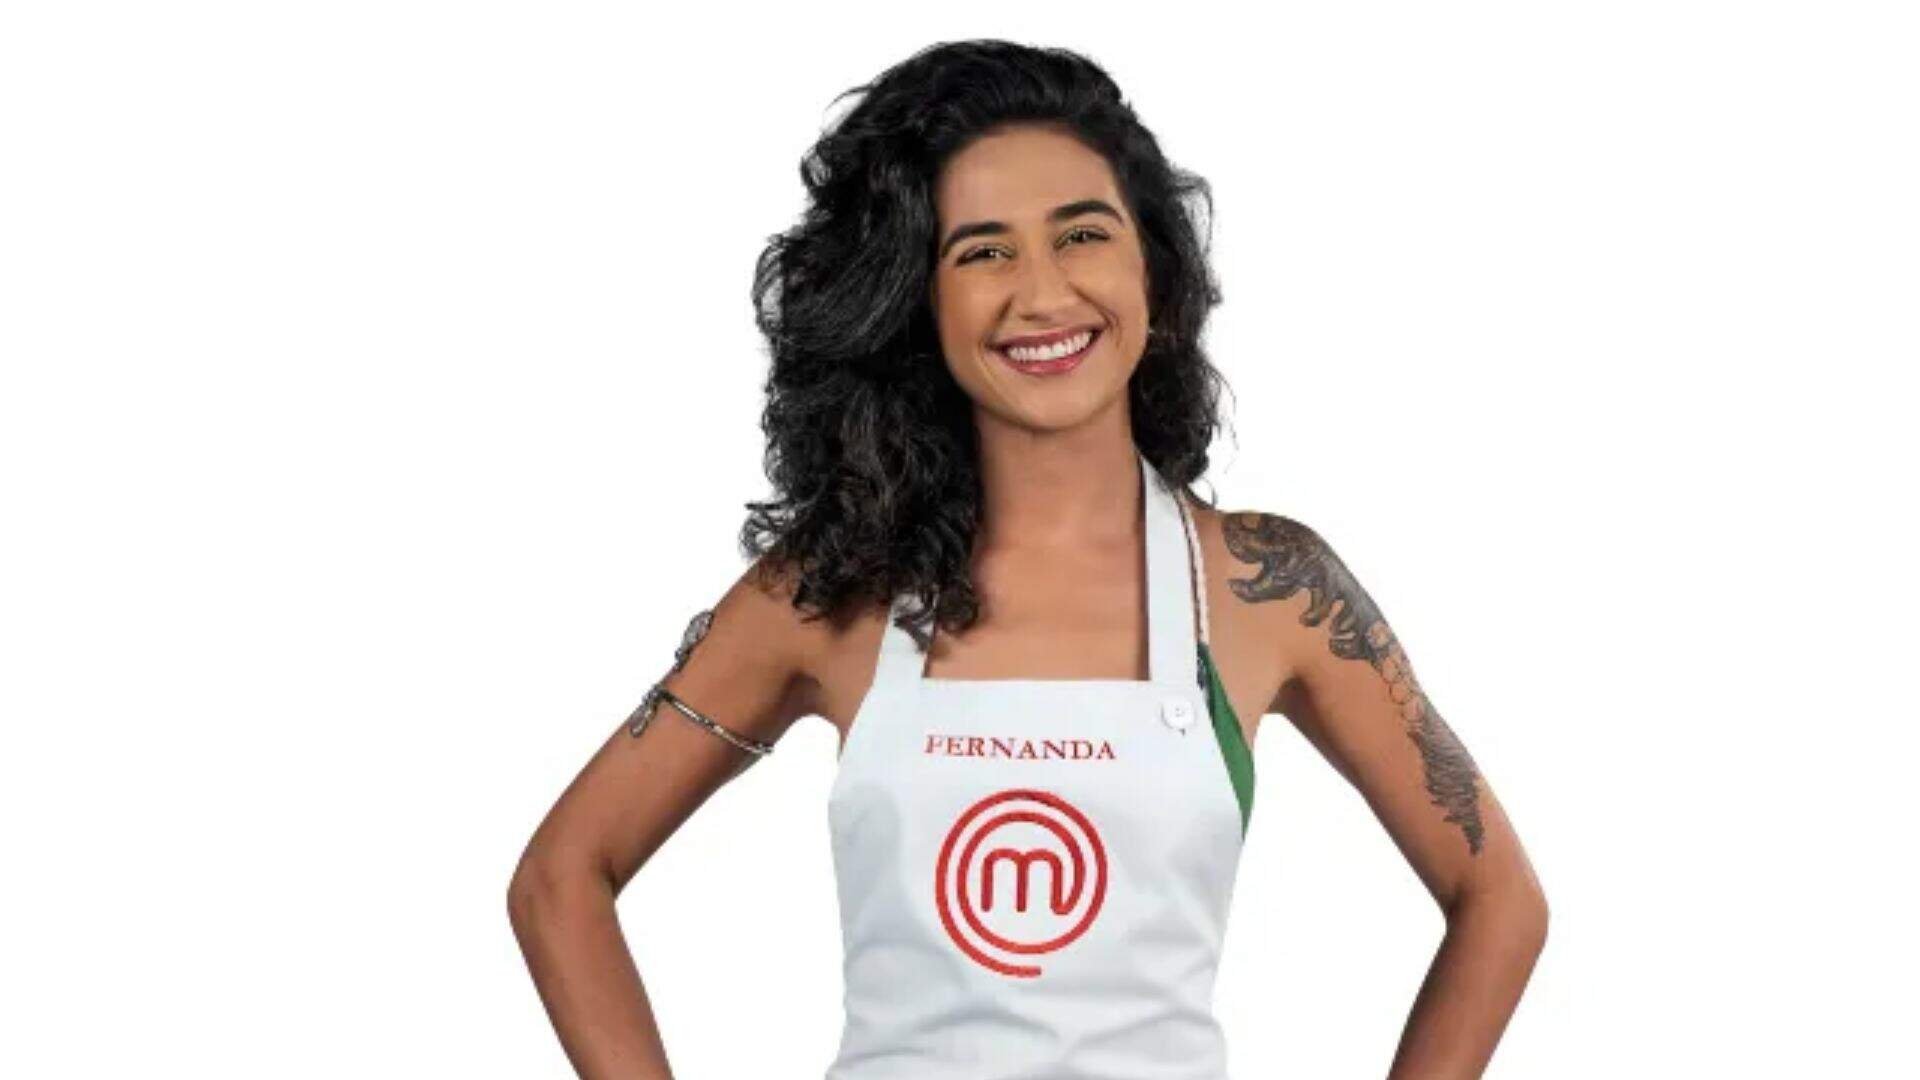 Masterchef 2022: Eliminada no primeiro episódio, Fernanda ganha repescagem - Metropolitana FM